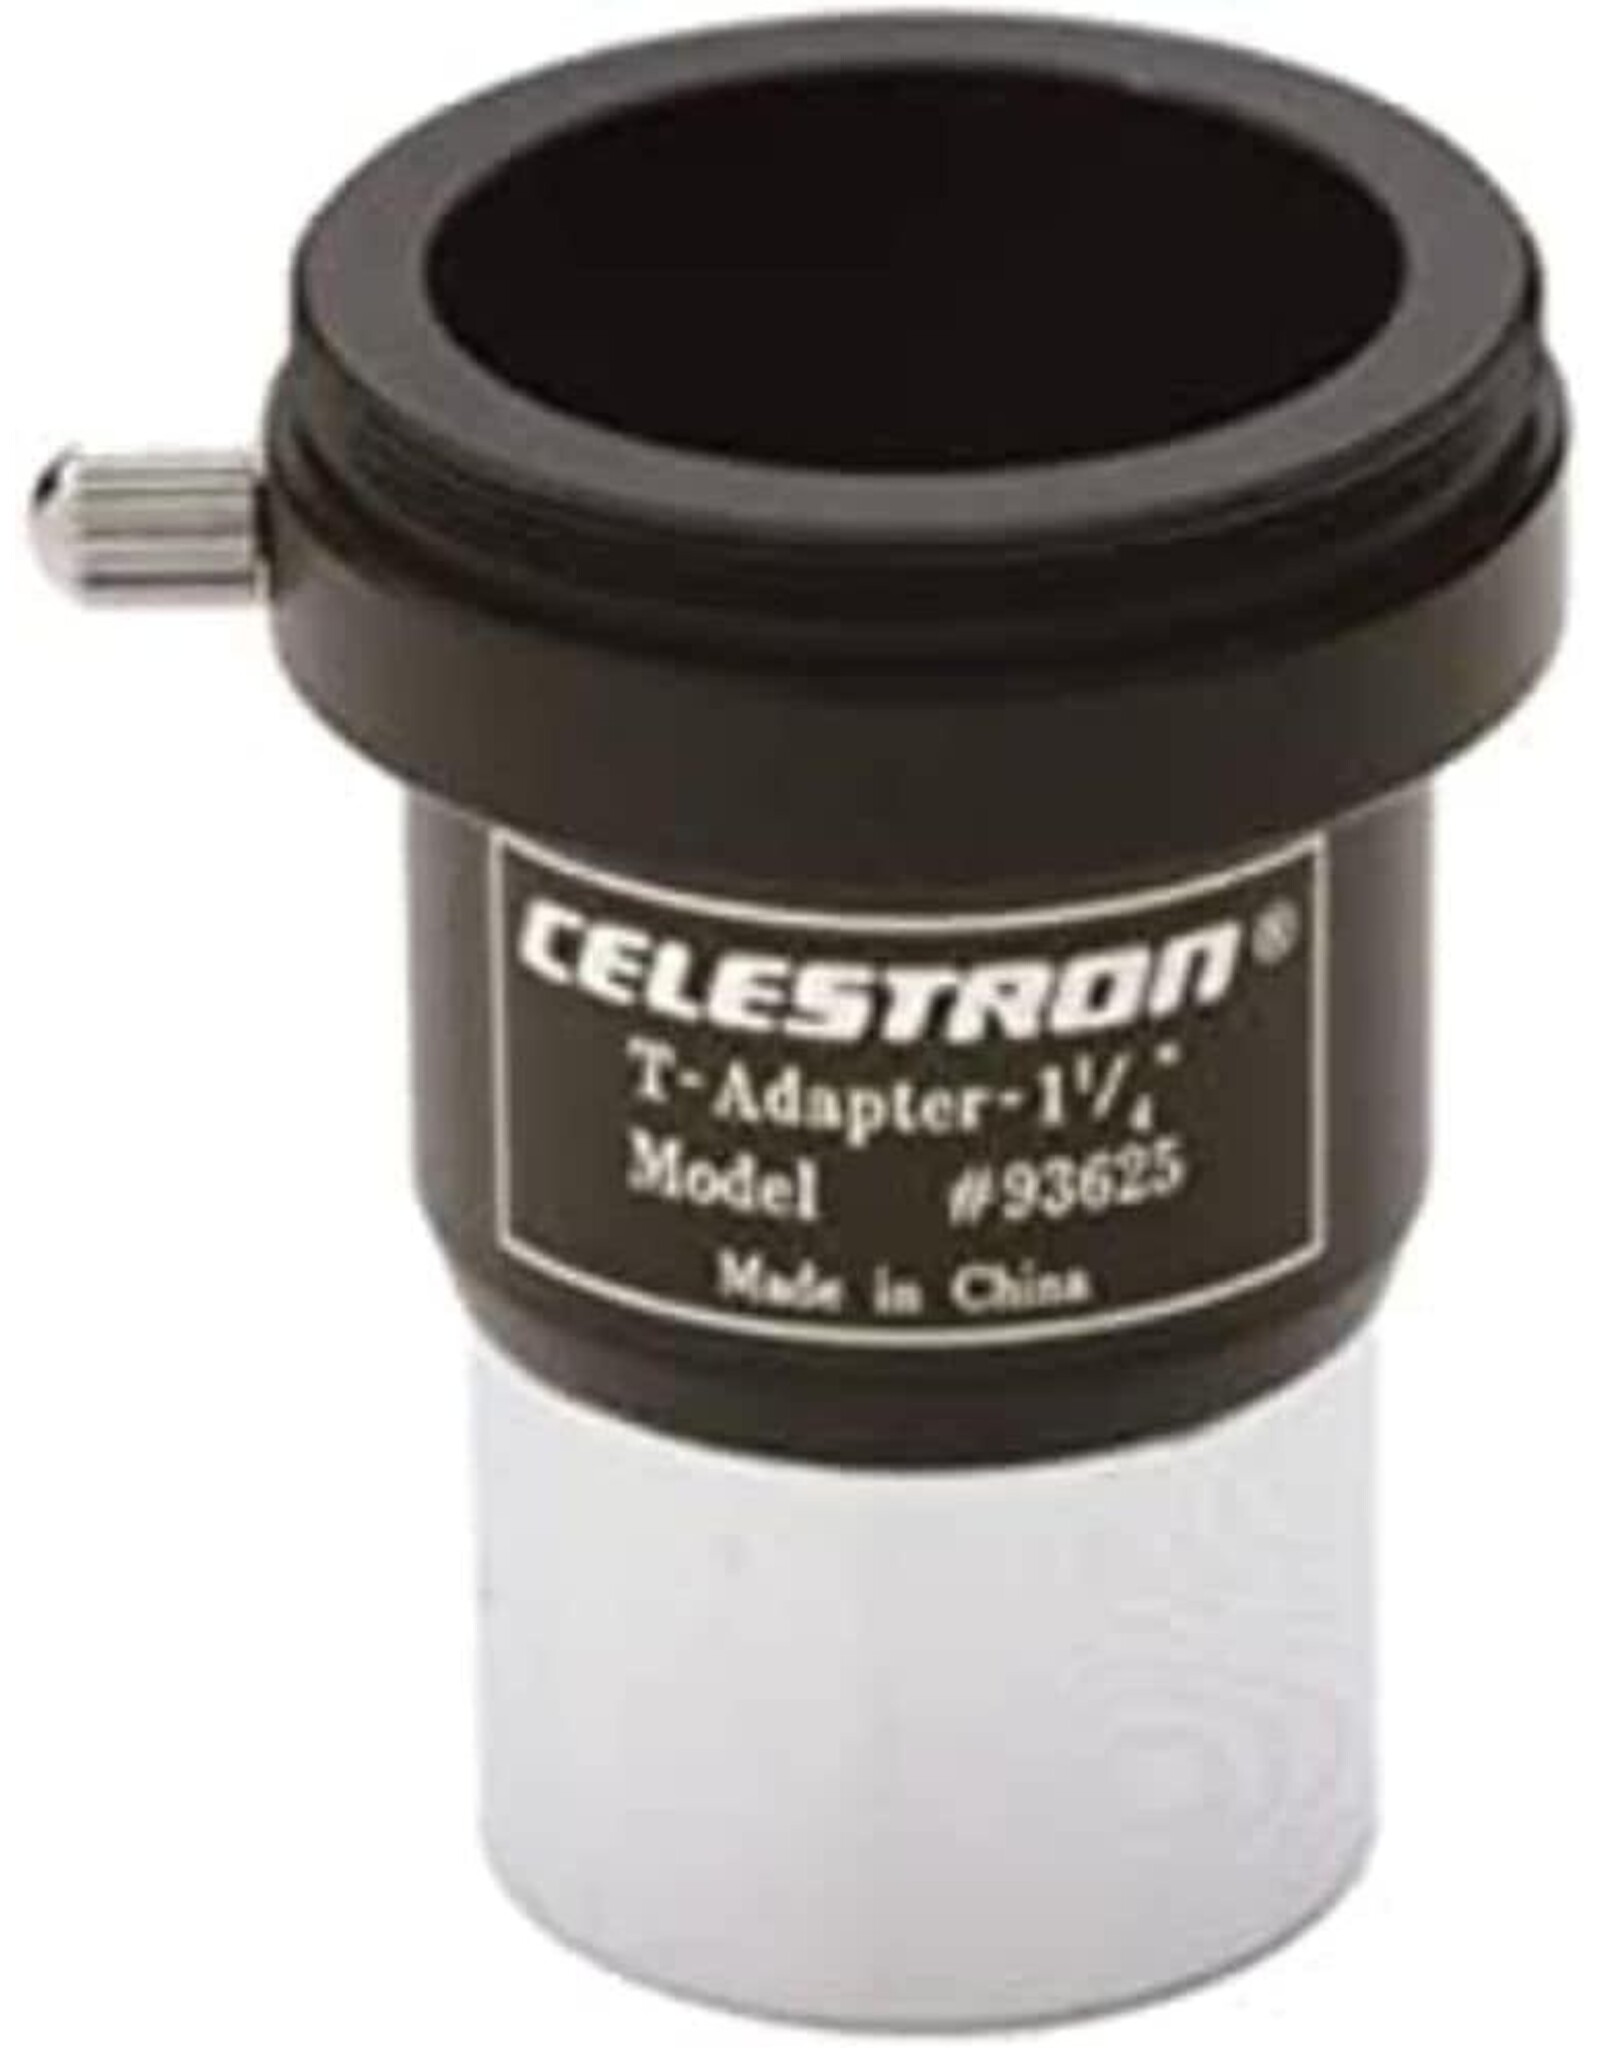 Celestron Celestron #93625 1.25" T Adapter